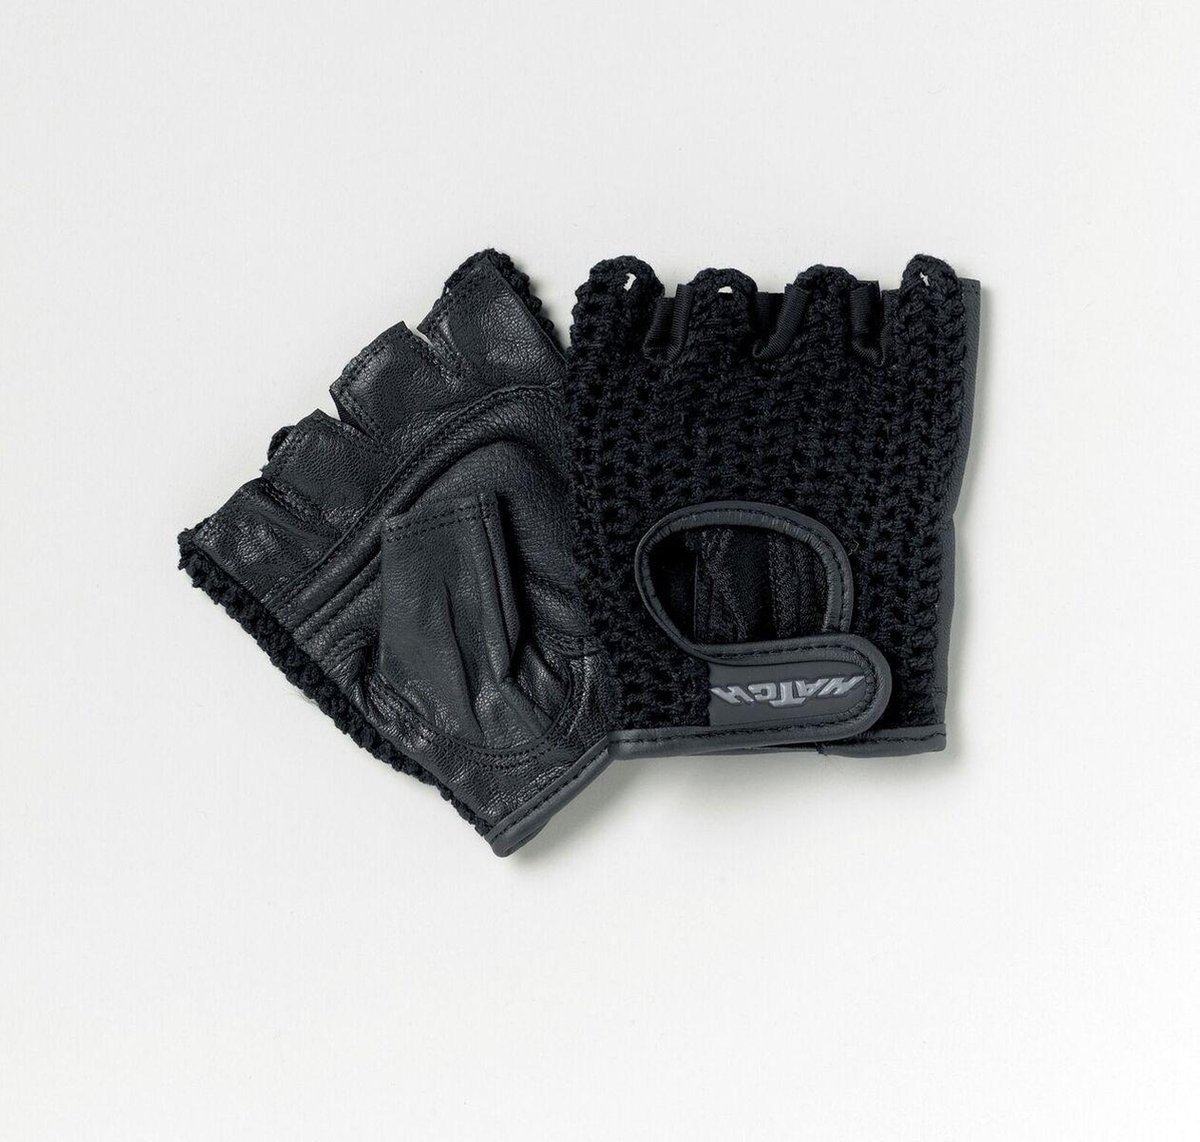 Antislip handschoenen voor rolstoelgebruik- XL omtrek 27,9 cm